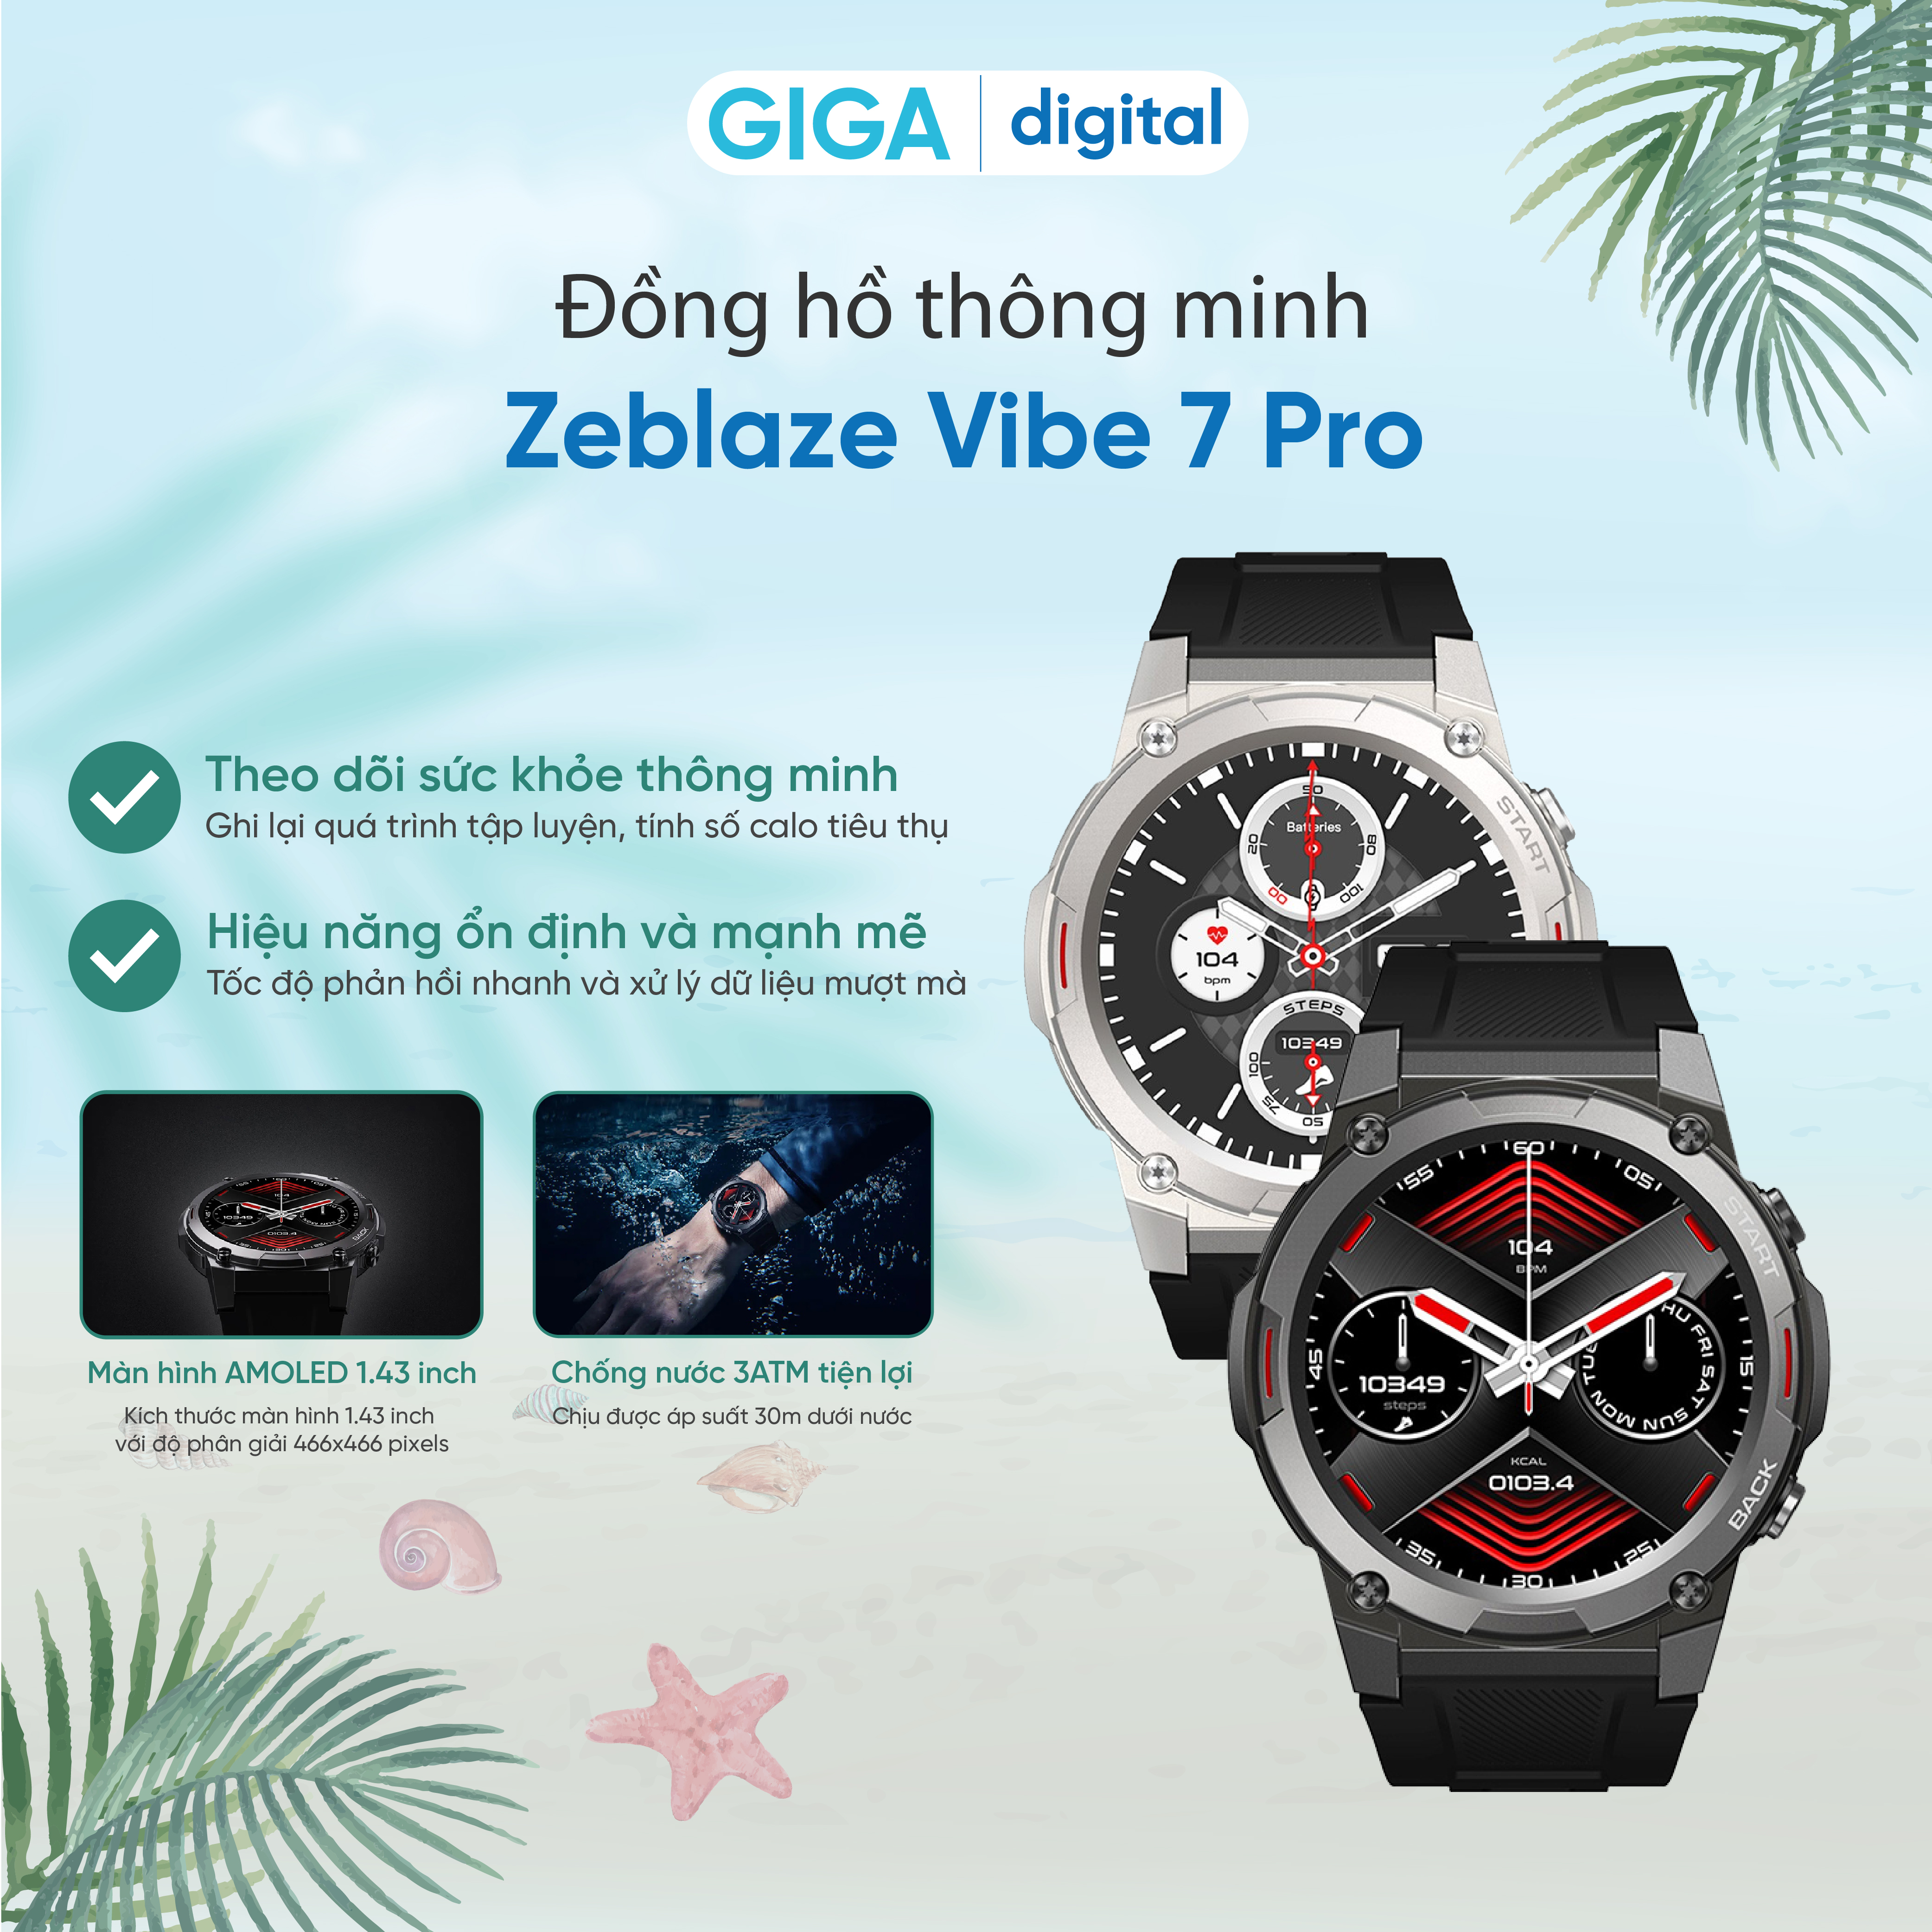 Đồng hồ đeo tay thông minh Zeblaze Vibe 7 Pro - Hàng chính hãng